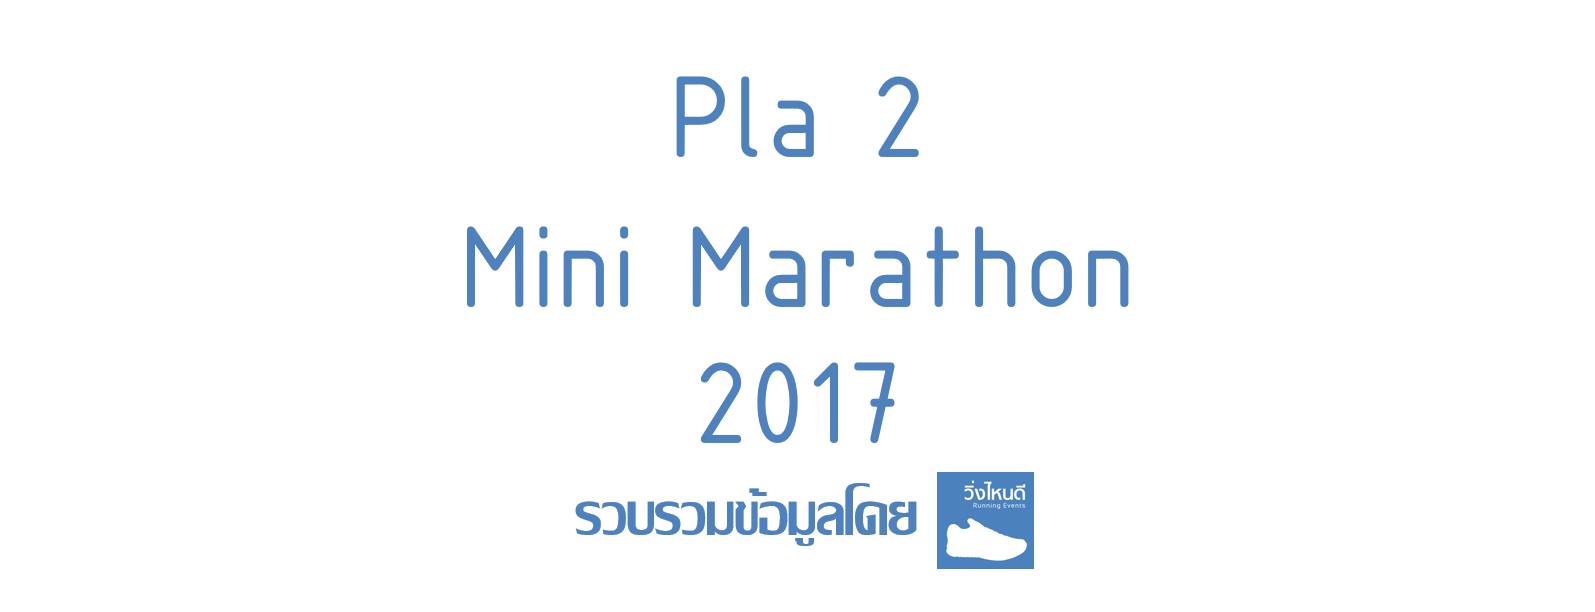 Pla 2 Mini Marathon 2017